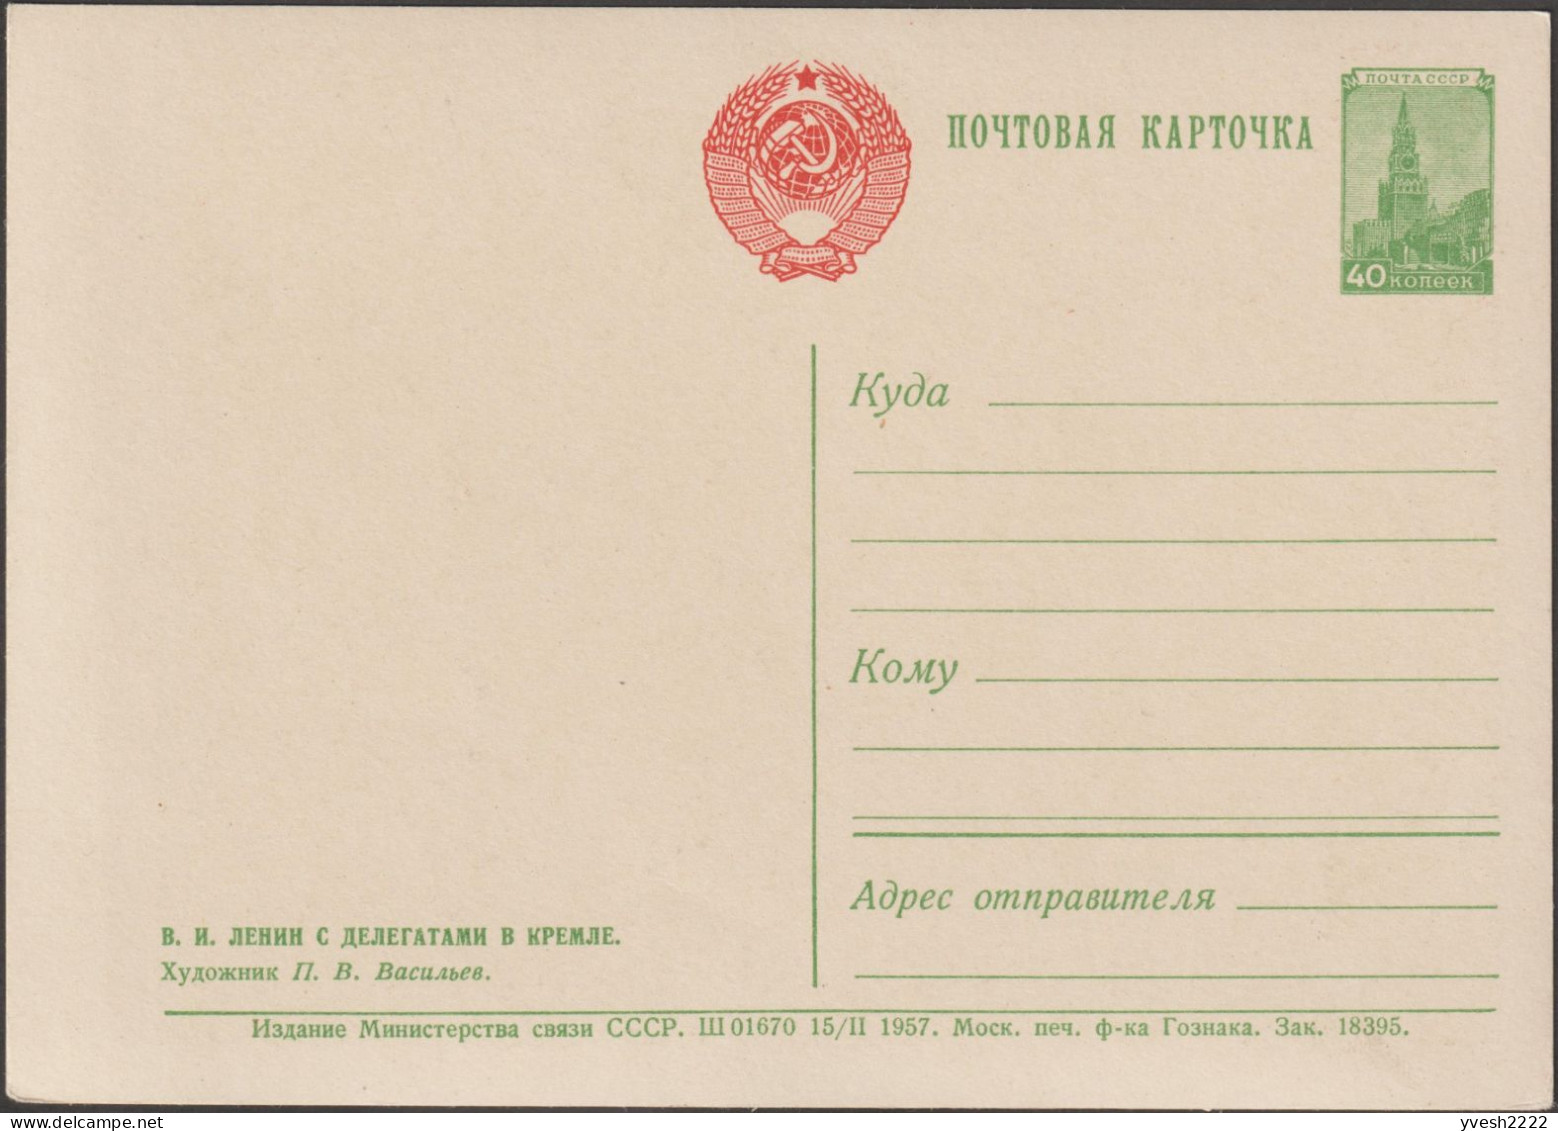 URSS 1957. 4 entiers postaux, portraits de Lénine, Vladimir Ilitch Oulianov, par Piotr Konstantinovich Vasiliev